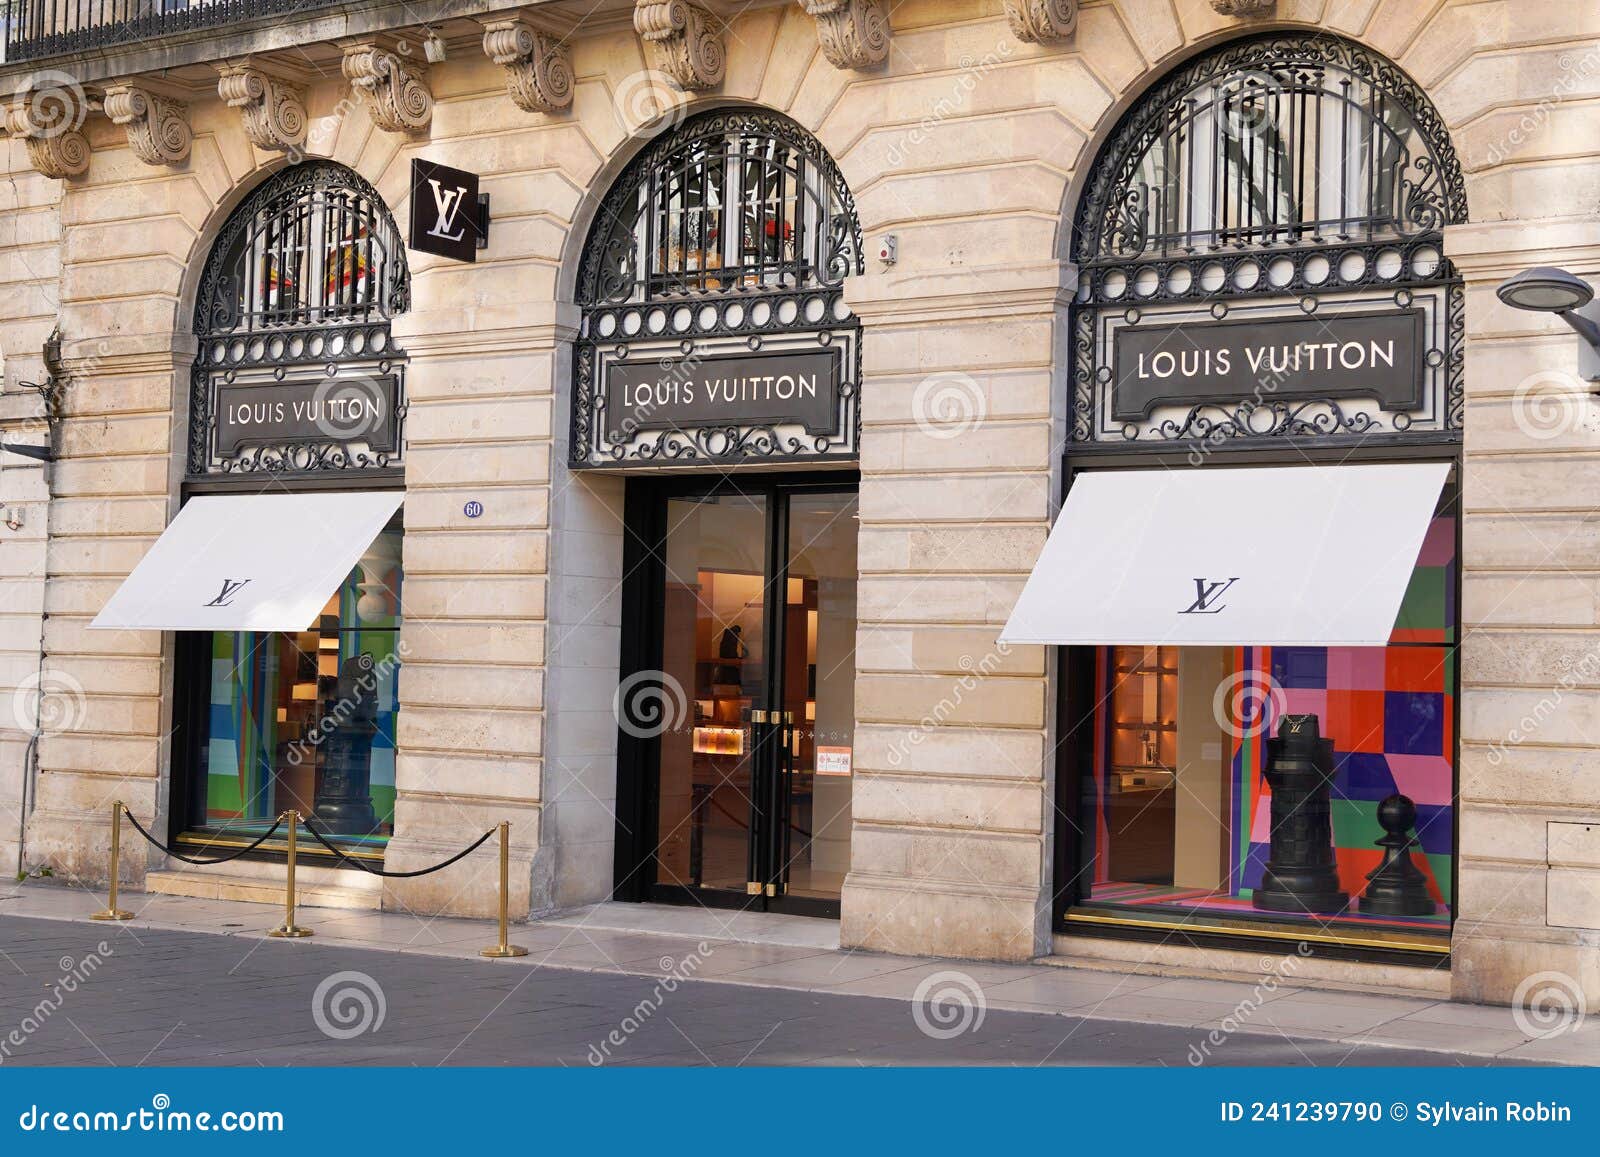 Louis Vuitton Logos - New Luxury Fashion